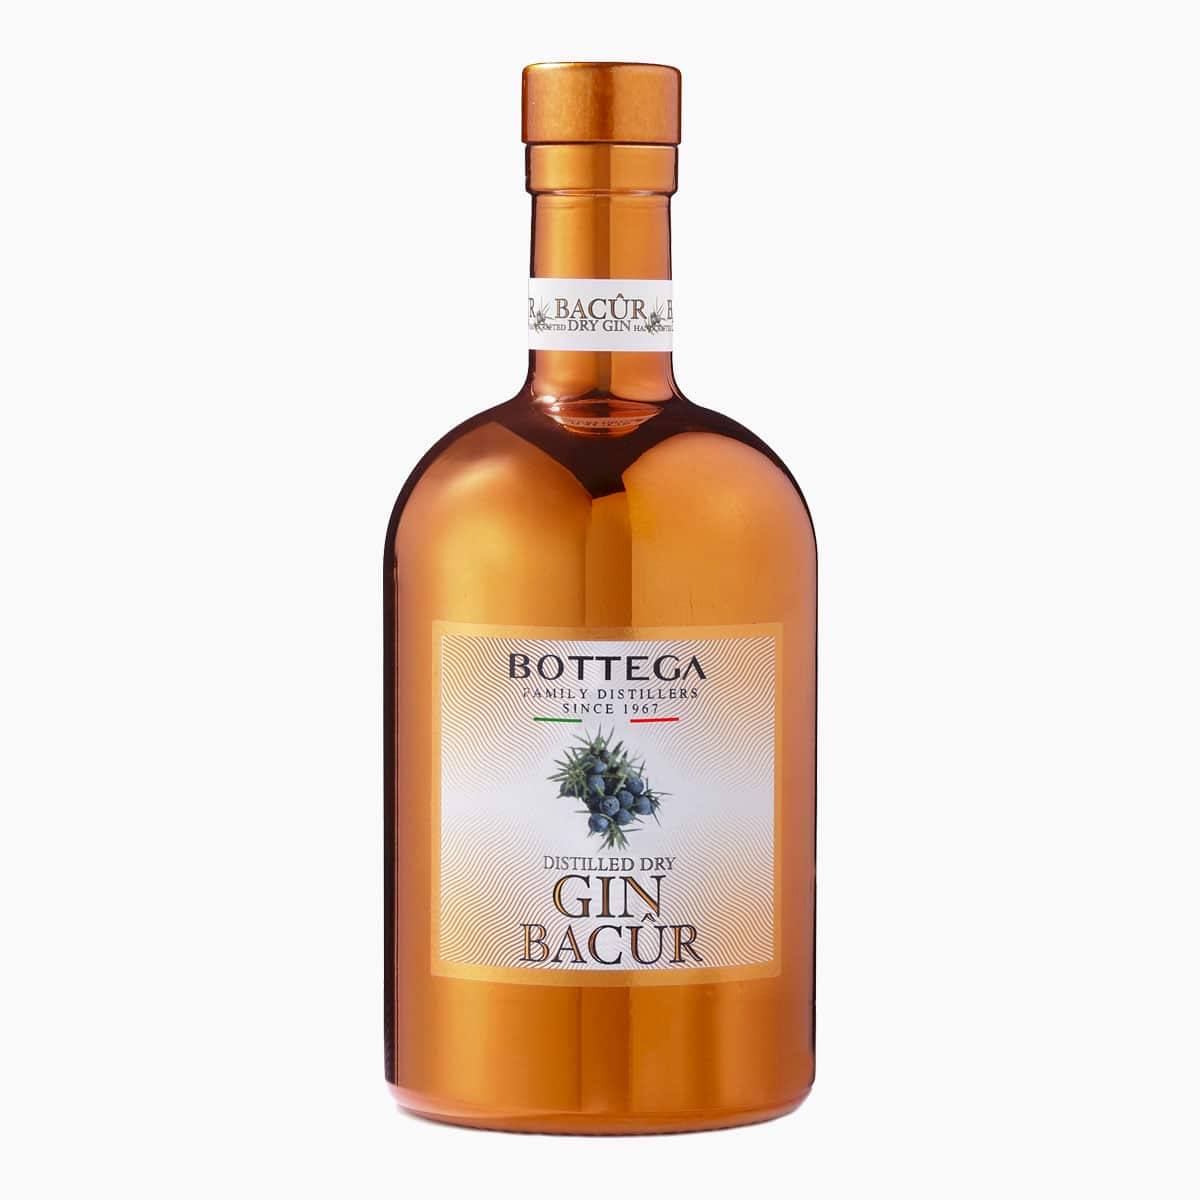 Brug Bottega Bacûr Gin til en forbedret oplevelse